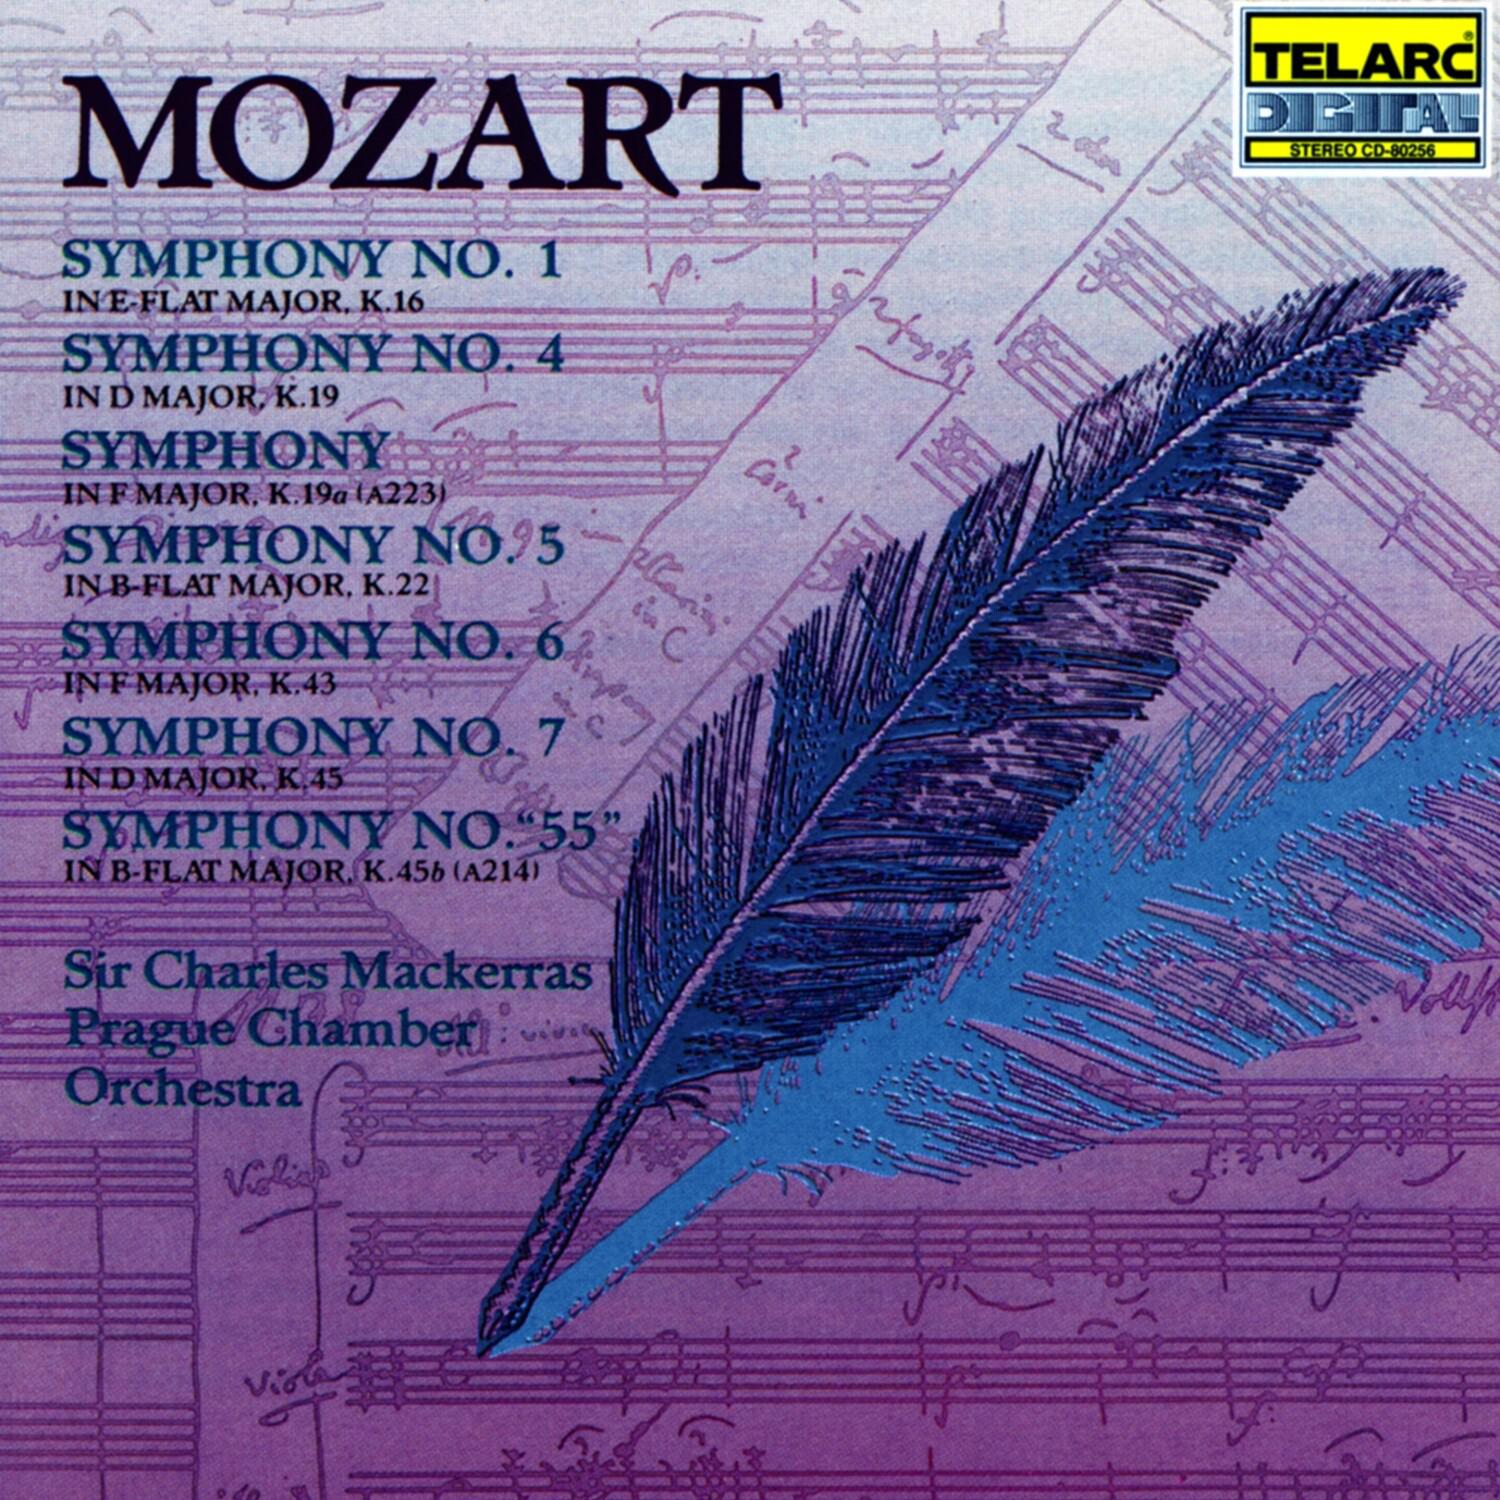 Symphony No. 7 in D major, K.45: III. Menuetto; Trio